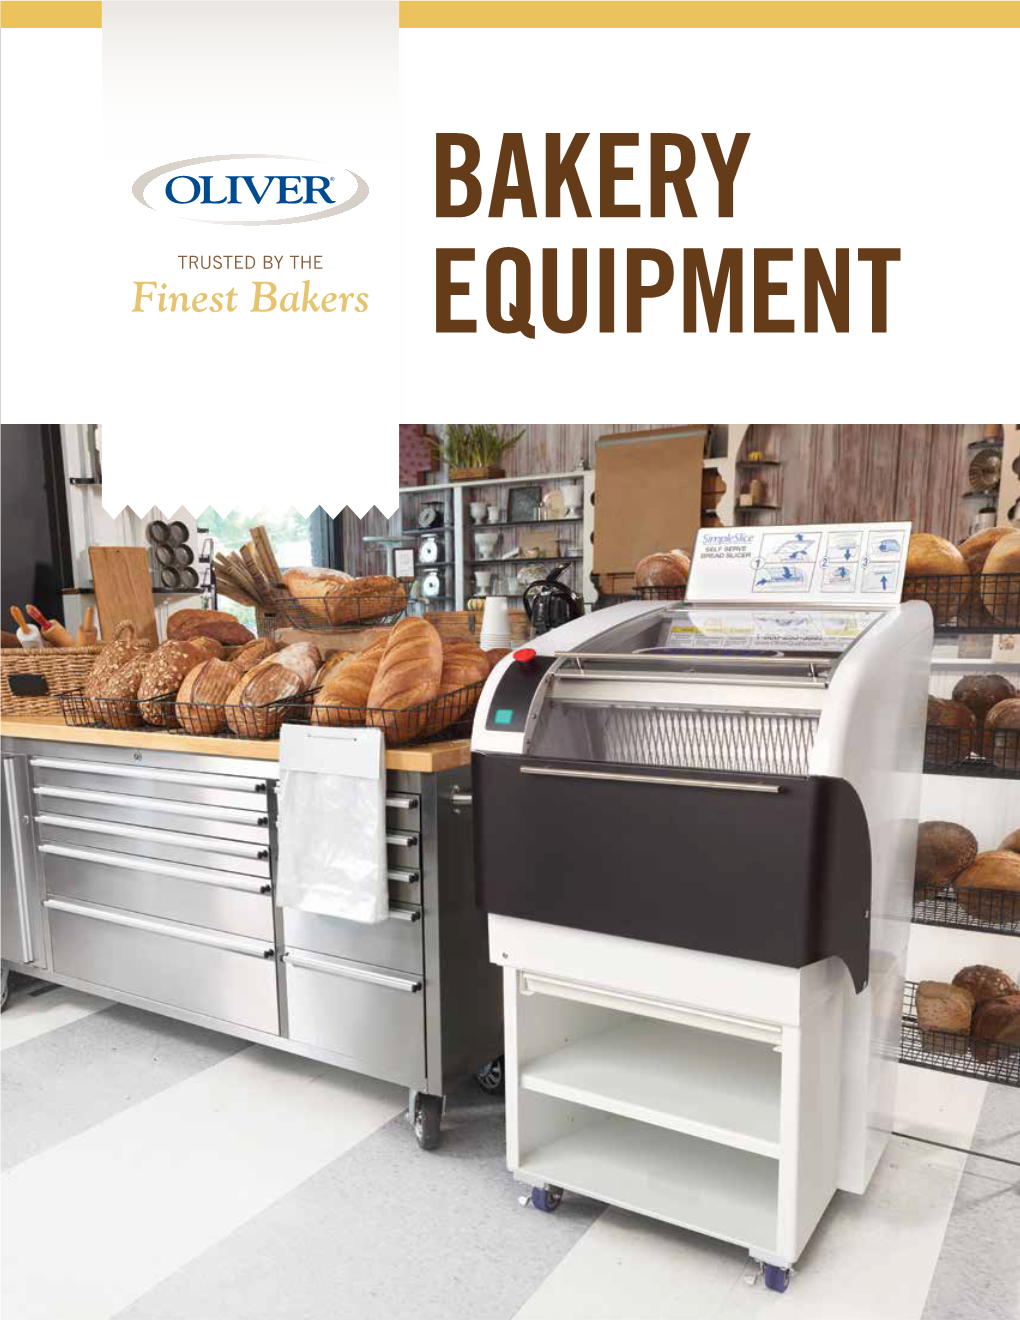 Finest Bakers EQUIPMENT VARISLICER MODEL 2005